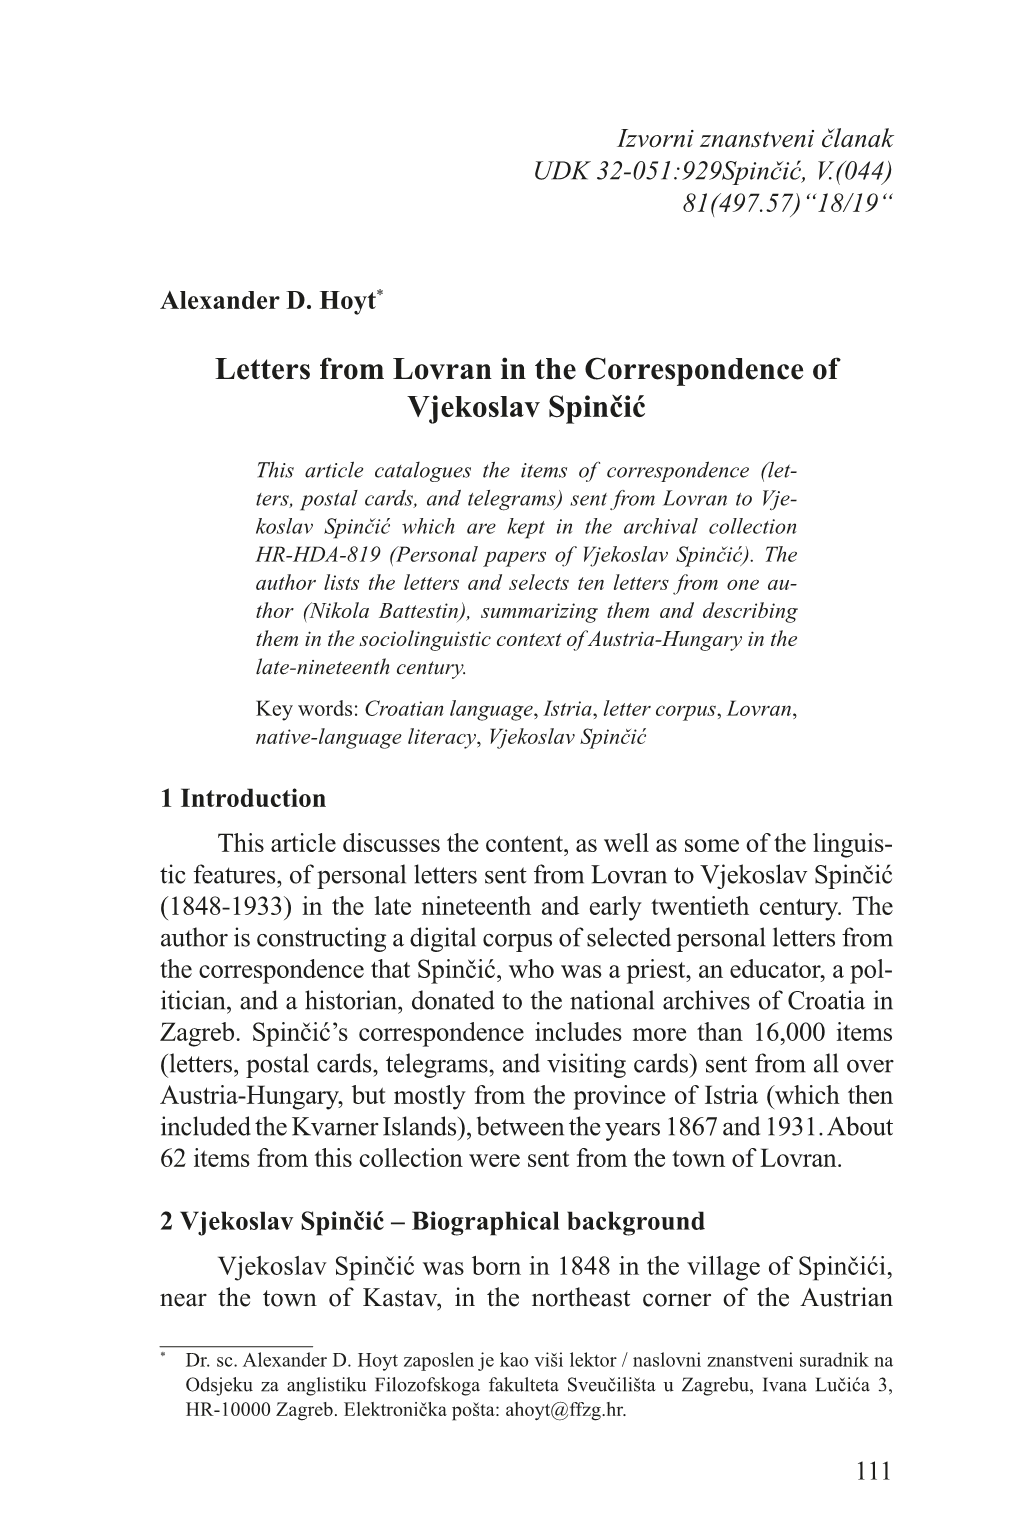 Letters from Lovran in the Correspondence of Vjekoslav Spinčić